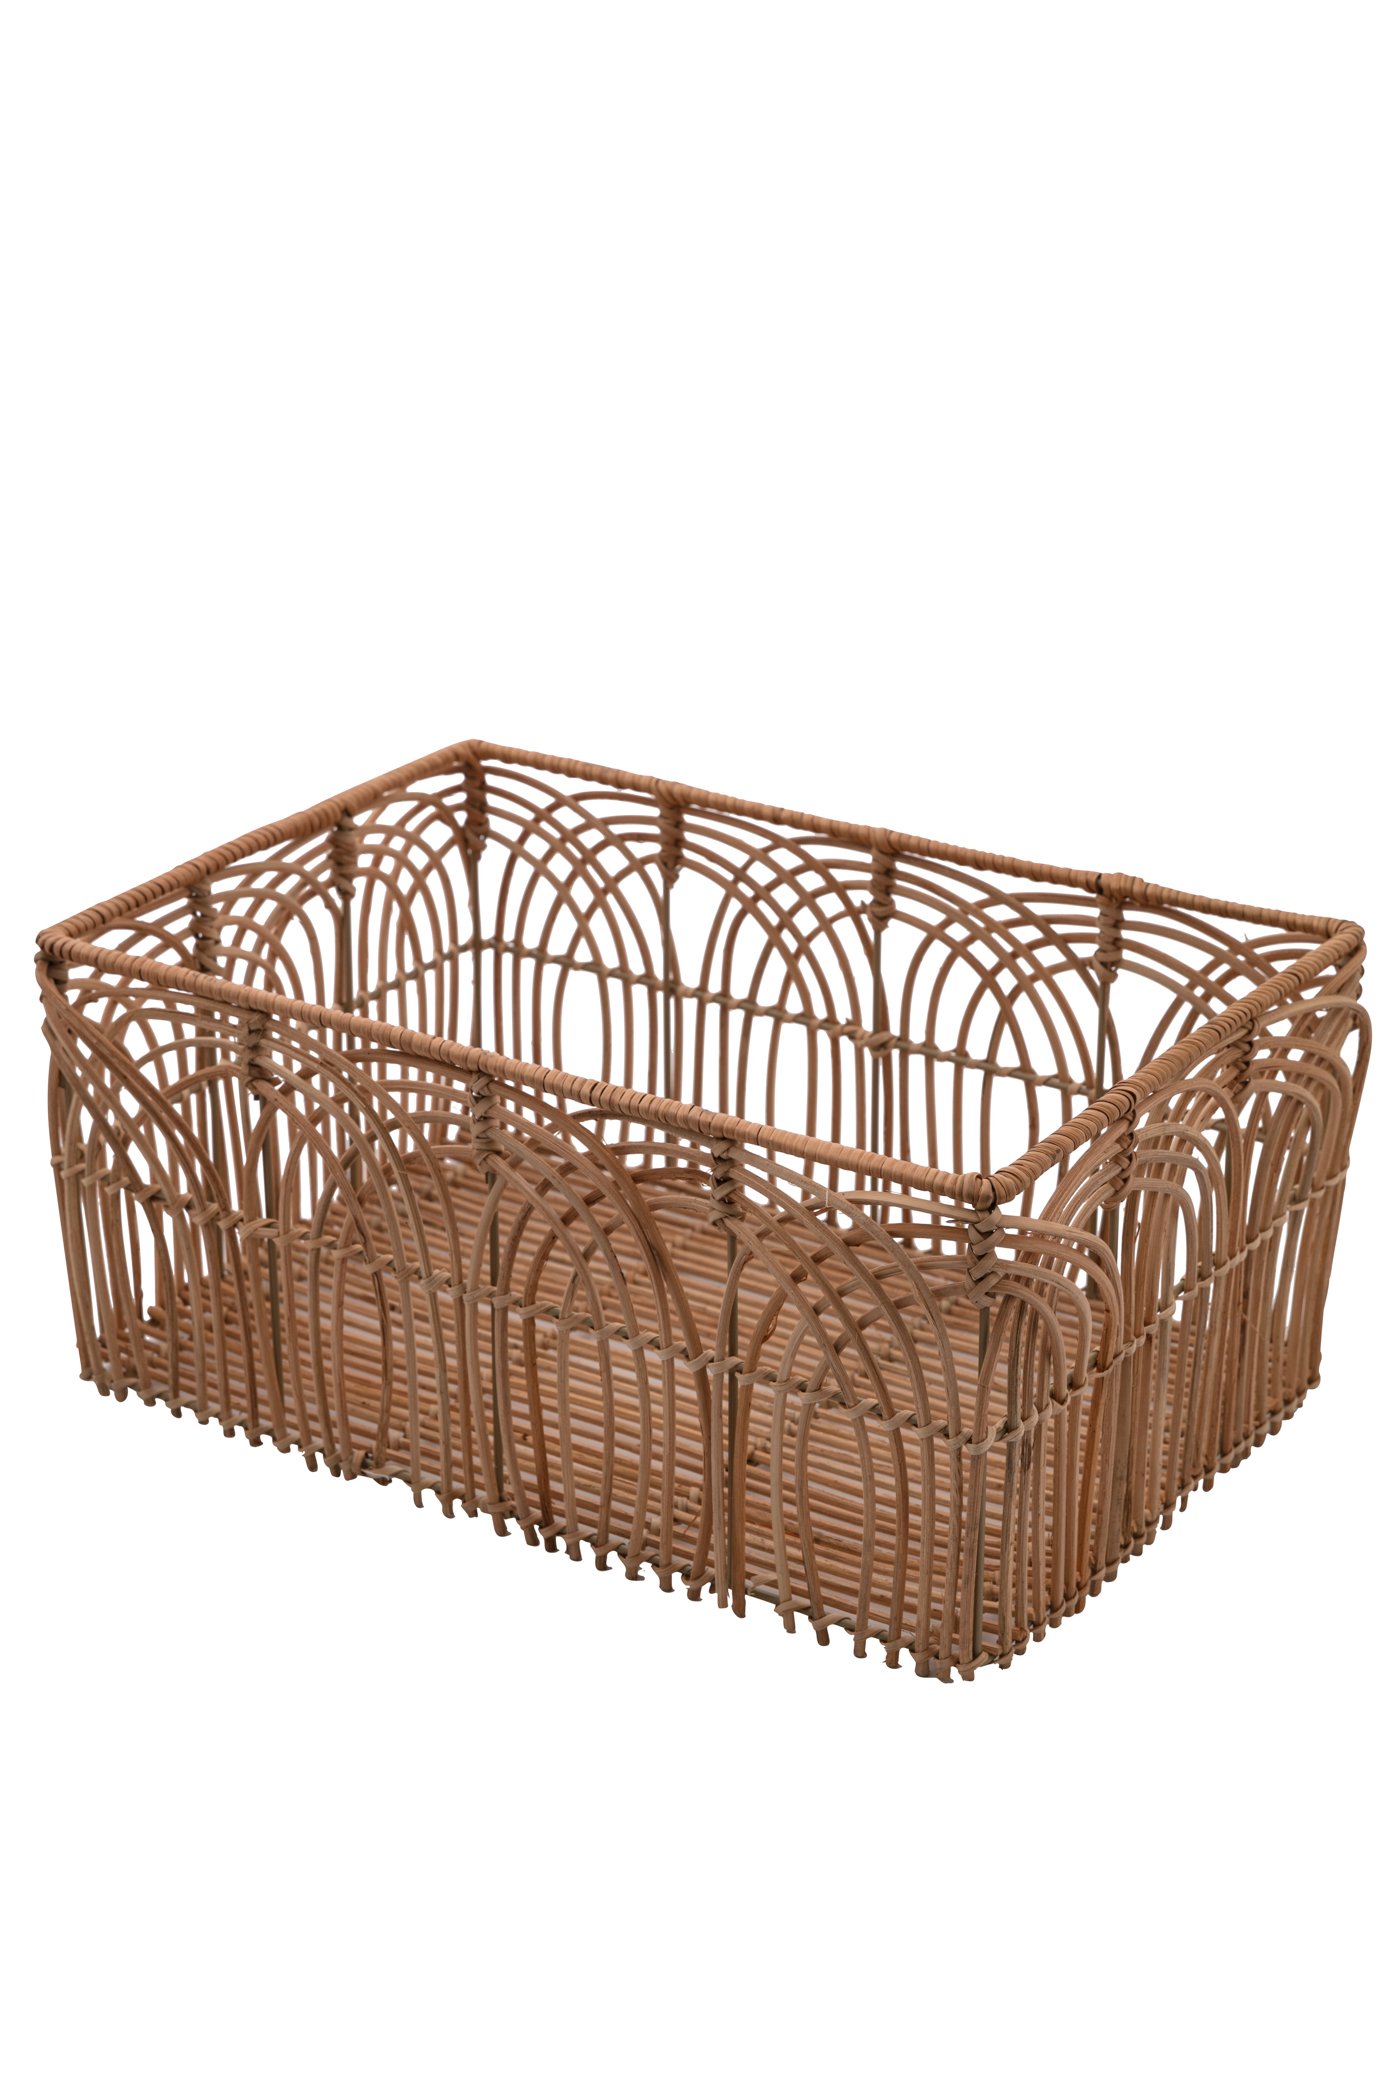 Large rattan basket Image 1